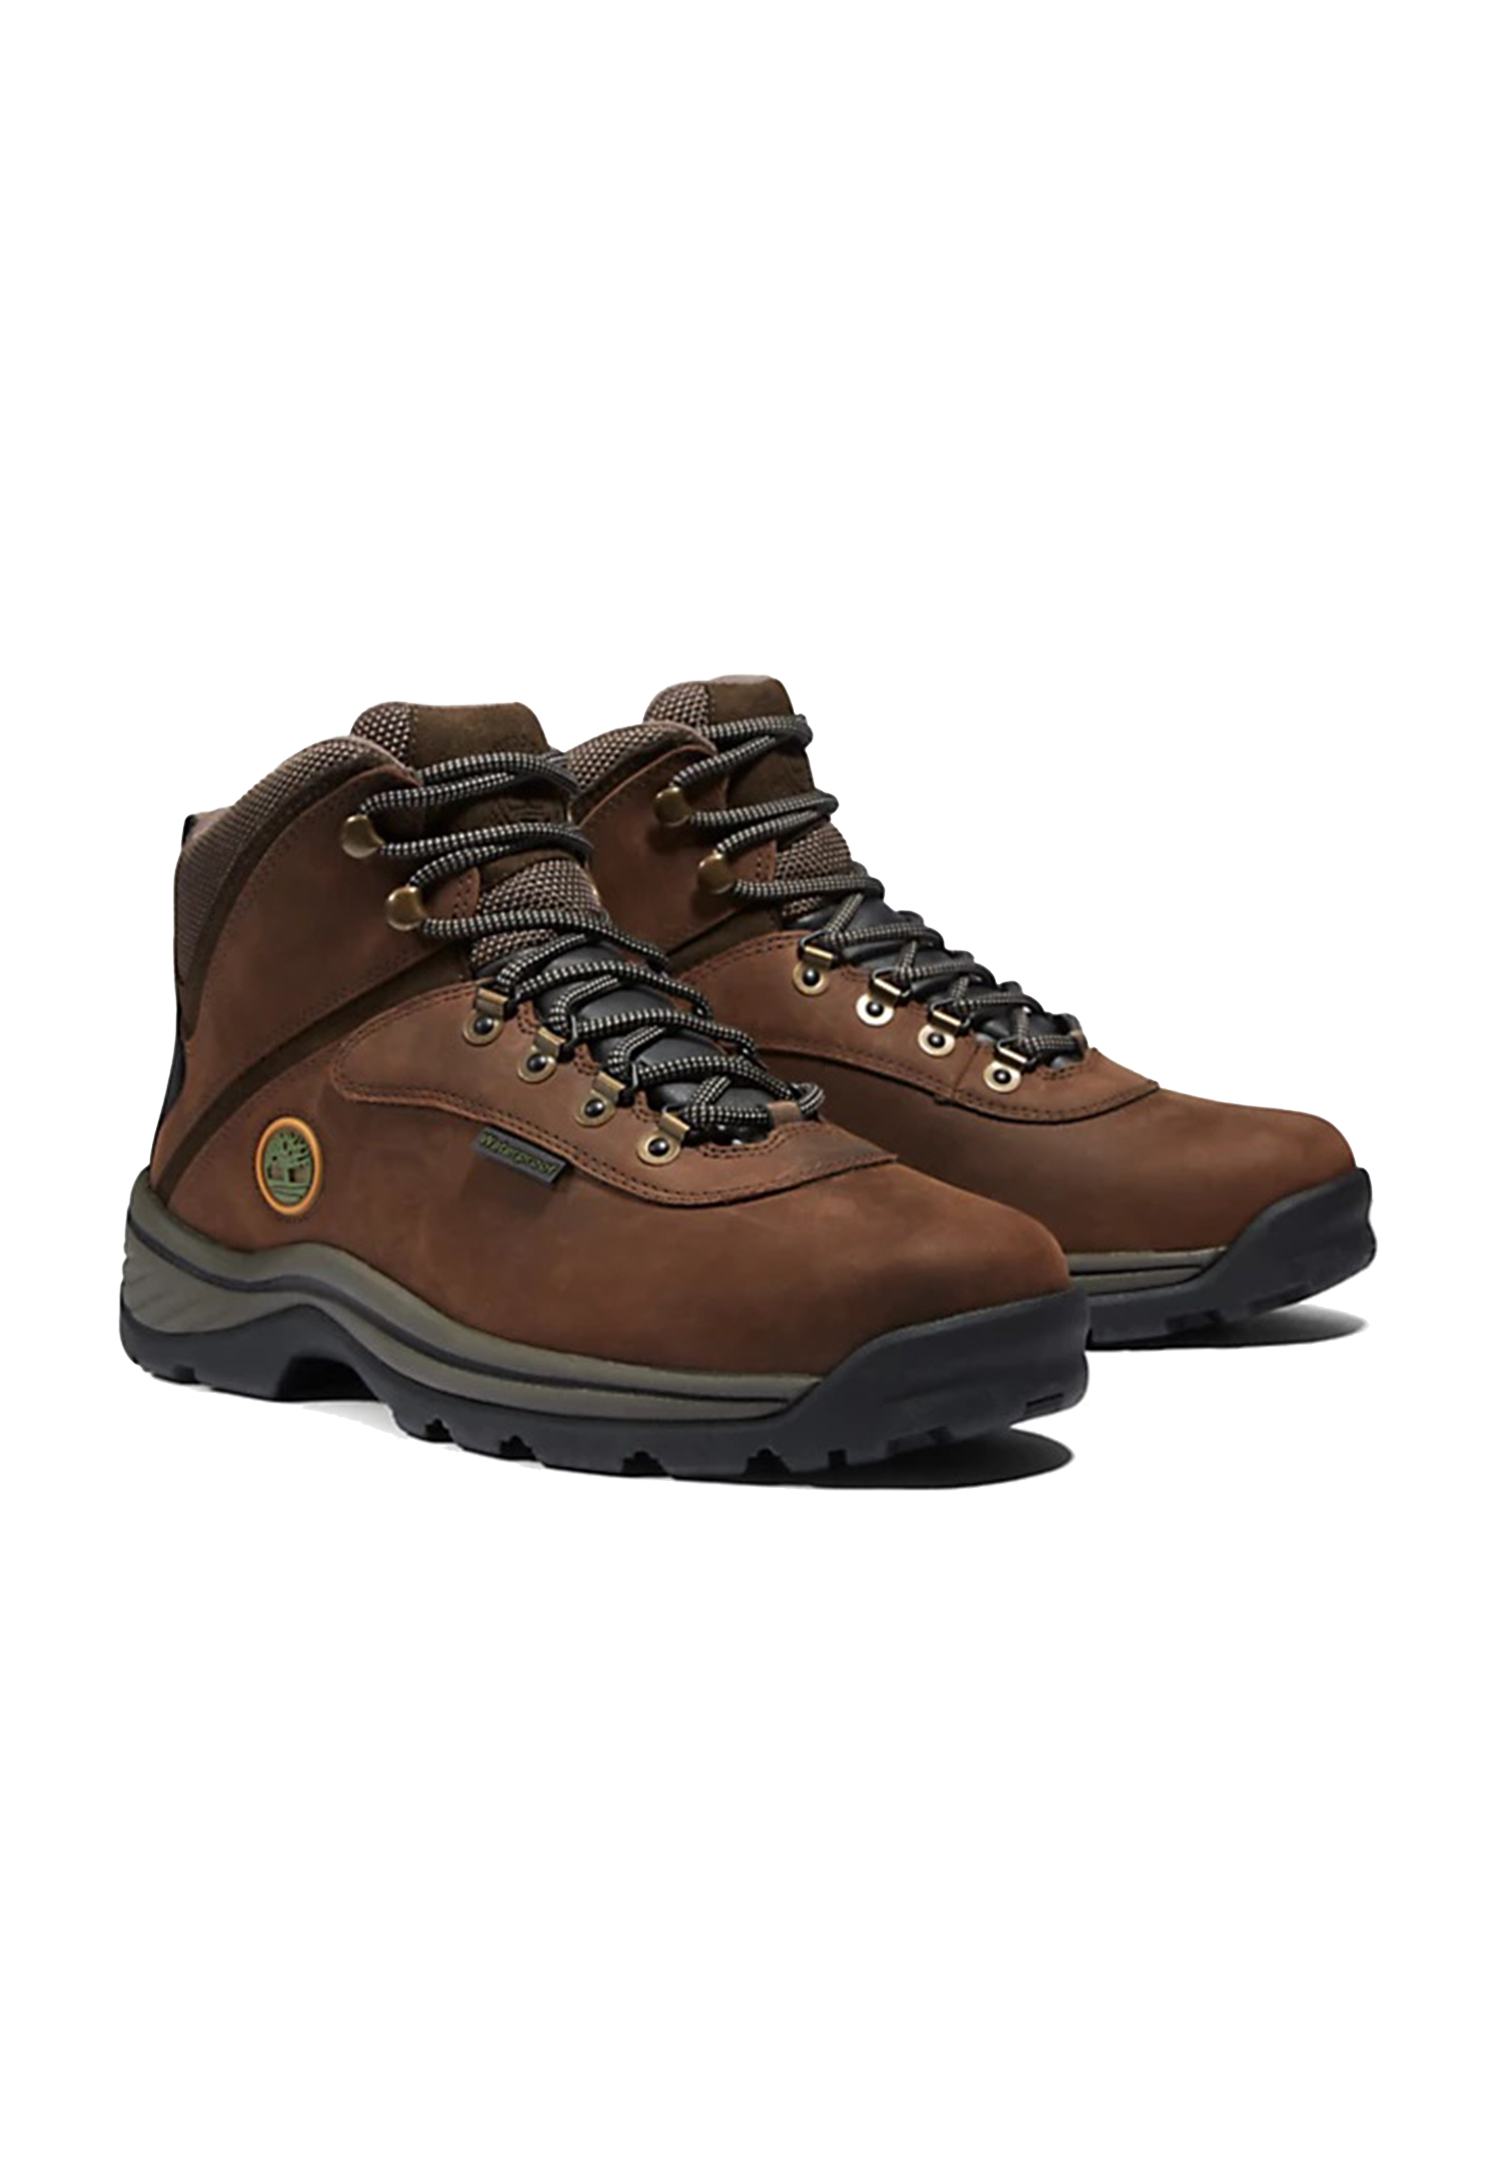 Timberland Herren White Ledge Waterproof Chukka Boots, Braun (Brown), 45.5 EU